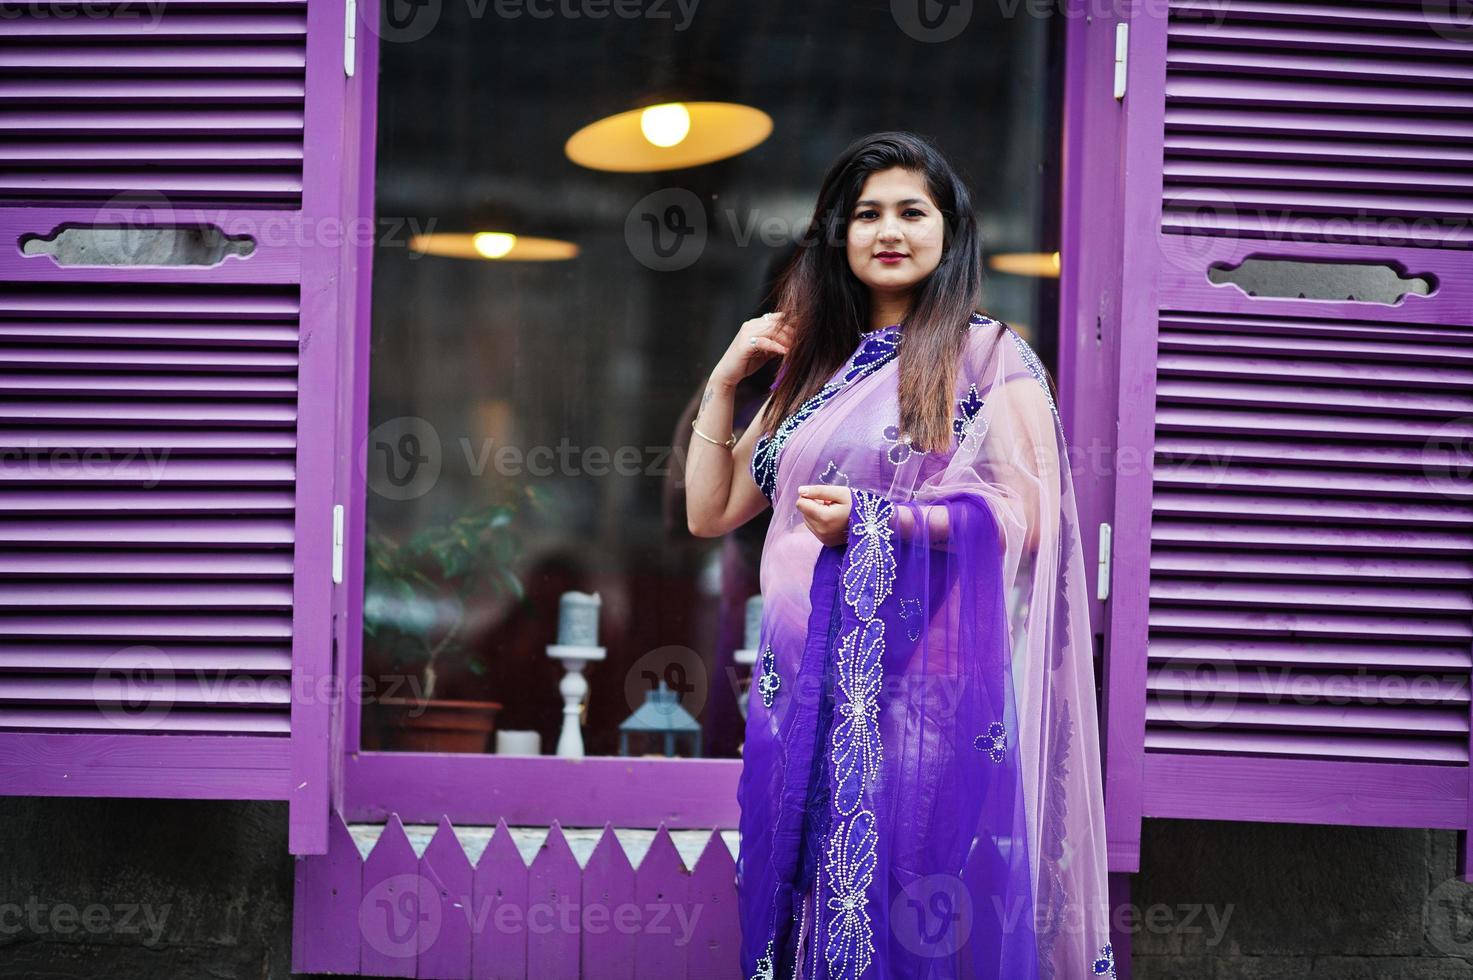 indiase hindoe meisje op traditionele violet saree poseerde op straat tegen paarse ramen. foto